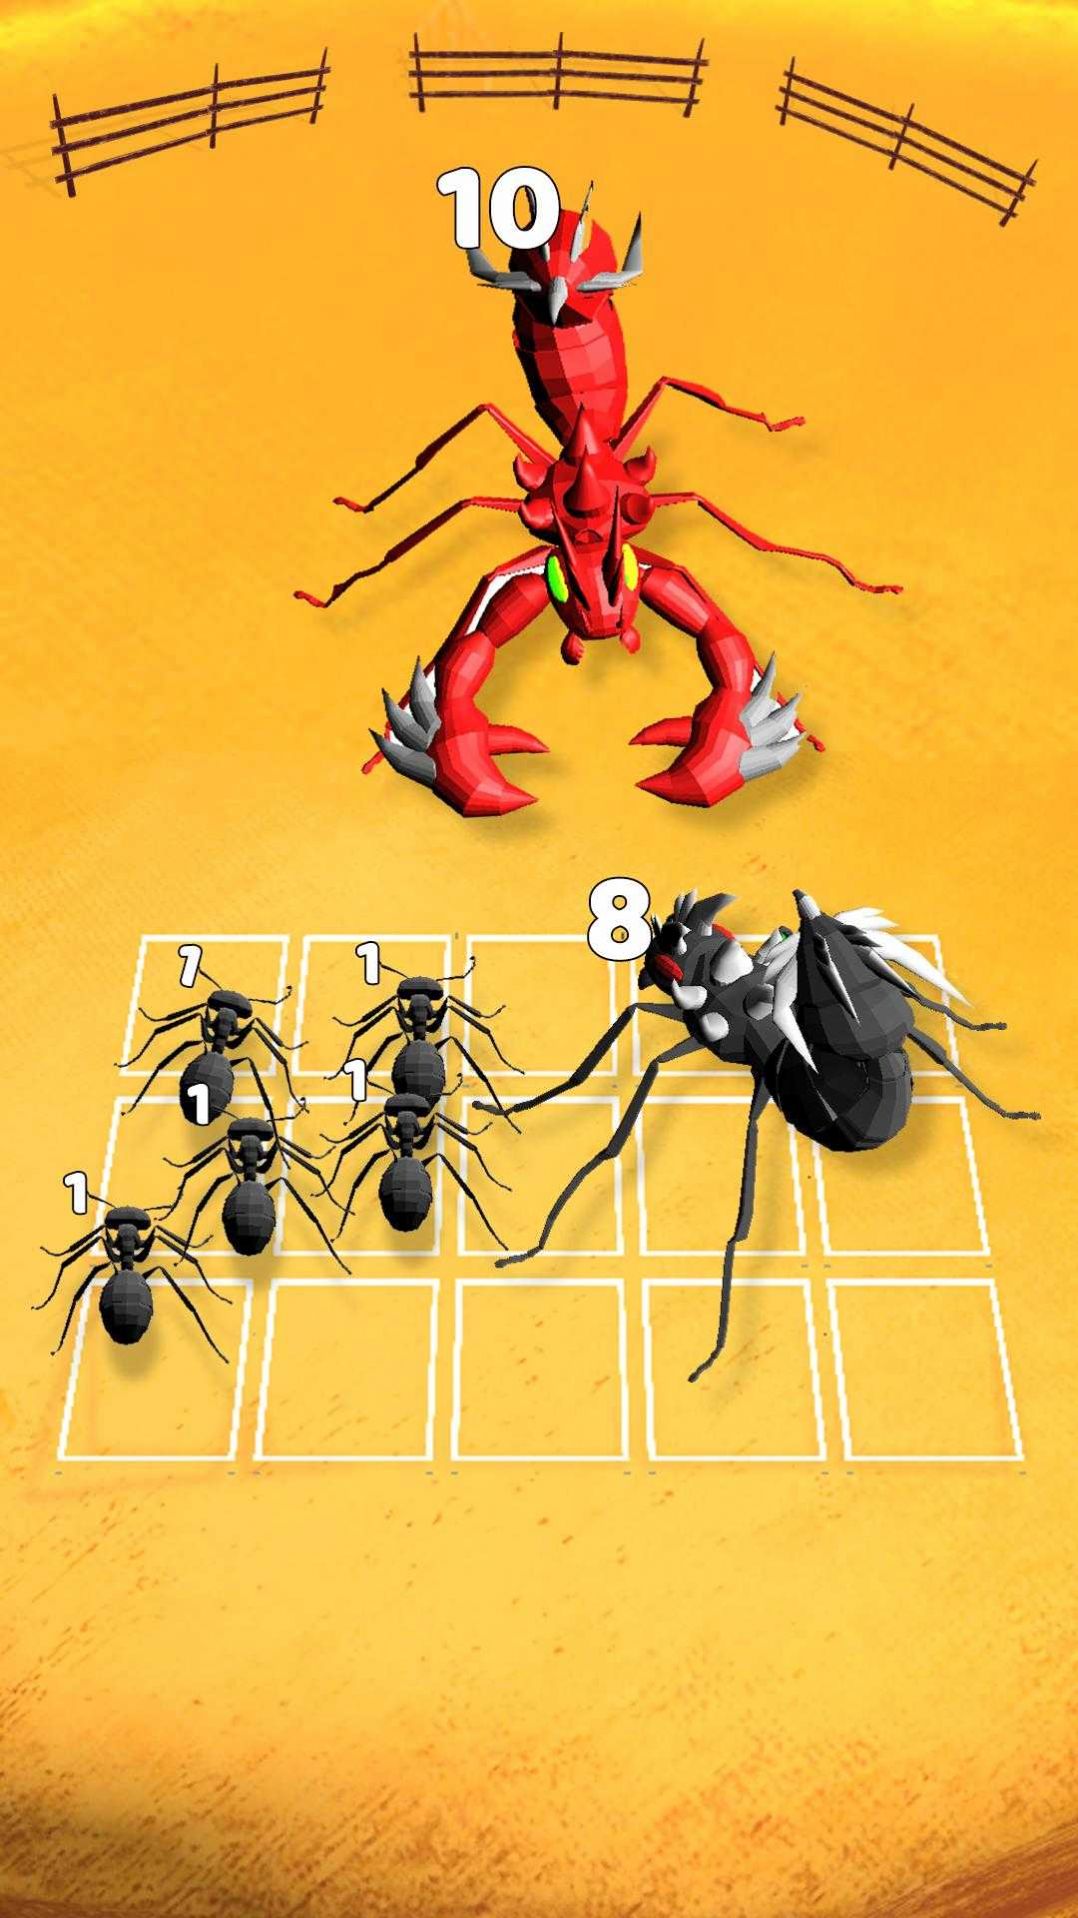 合并蚂蚁昆虫融合游戏下载安卓